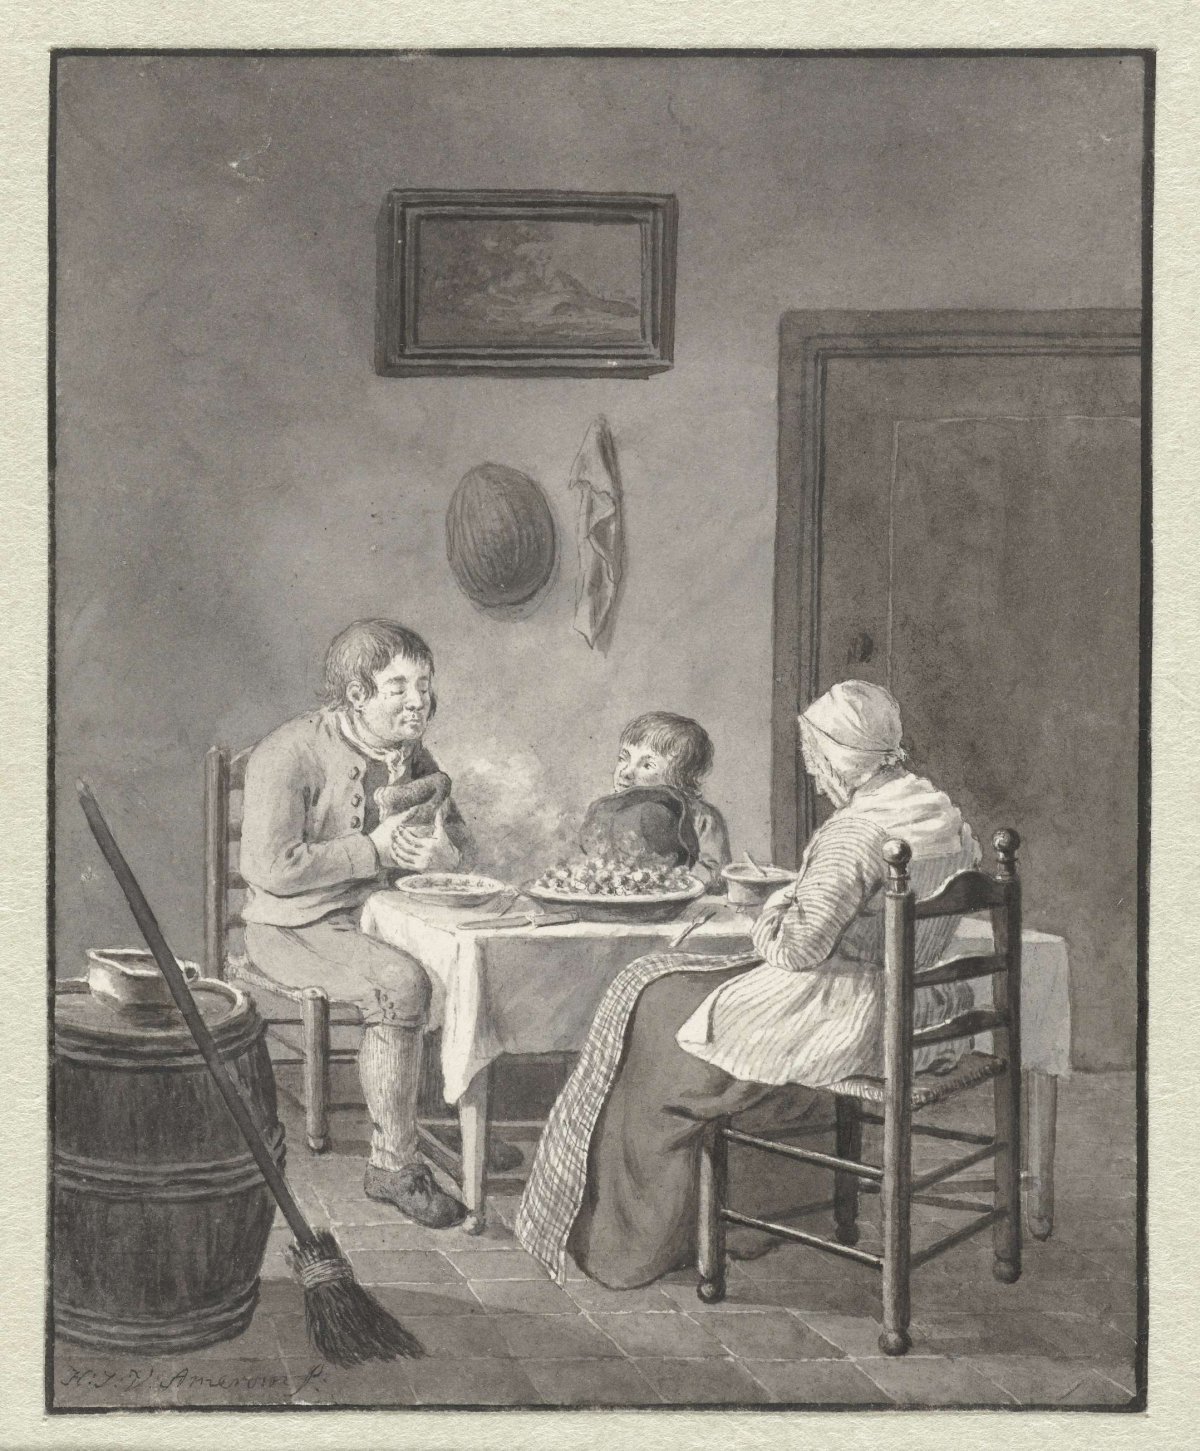 Prayer before the meal, Hendrik Jan van Amerom, 1786 - 1833